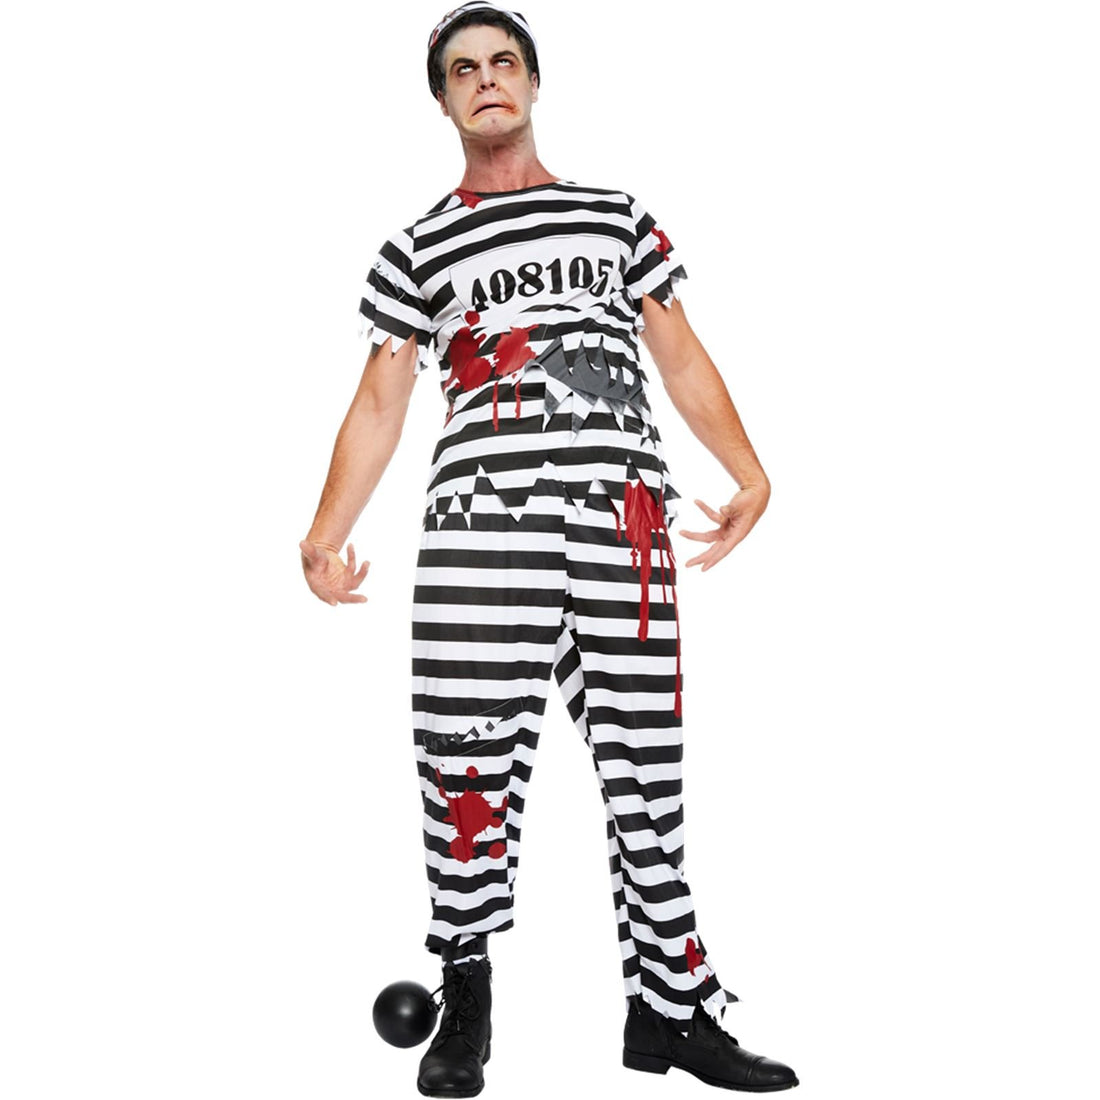 (9902665) Adult Mens Zombie Convict Costume (Medium)